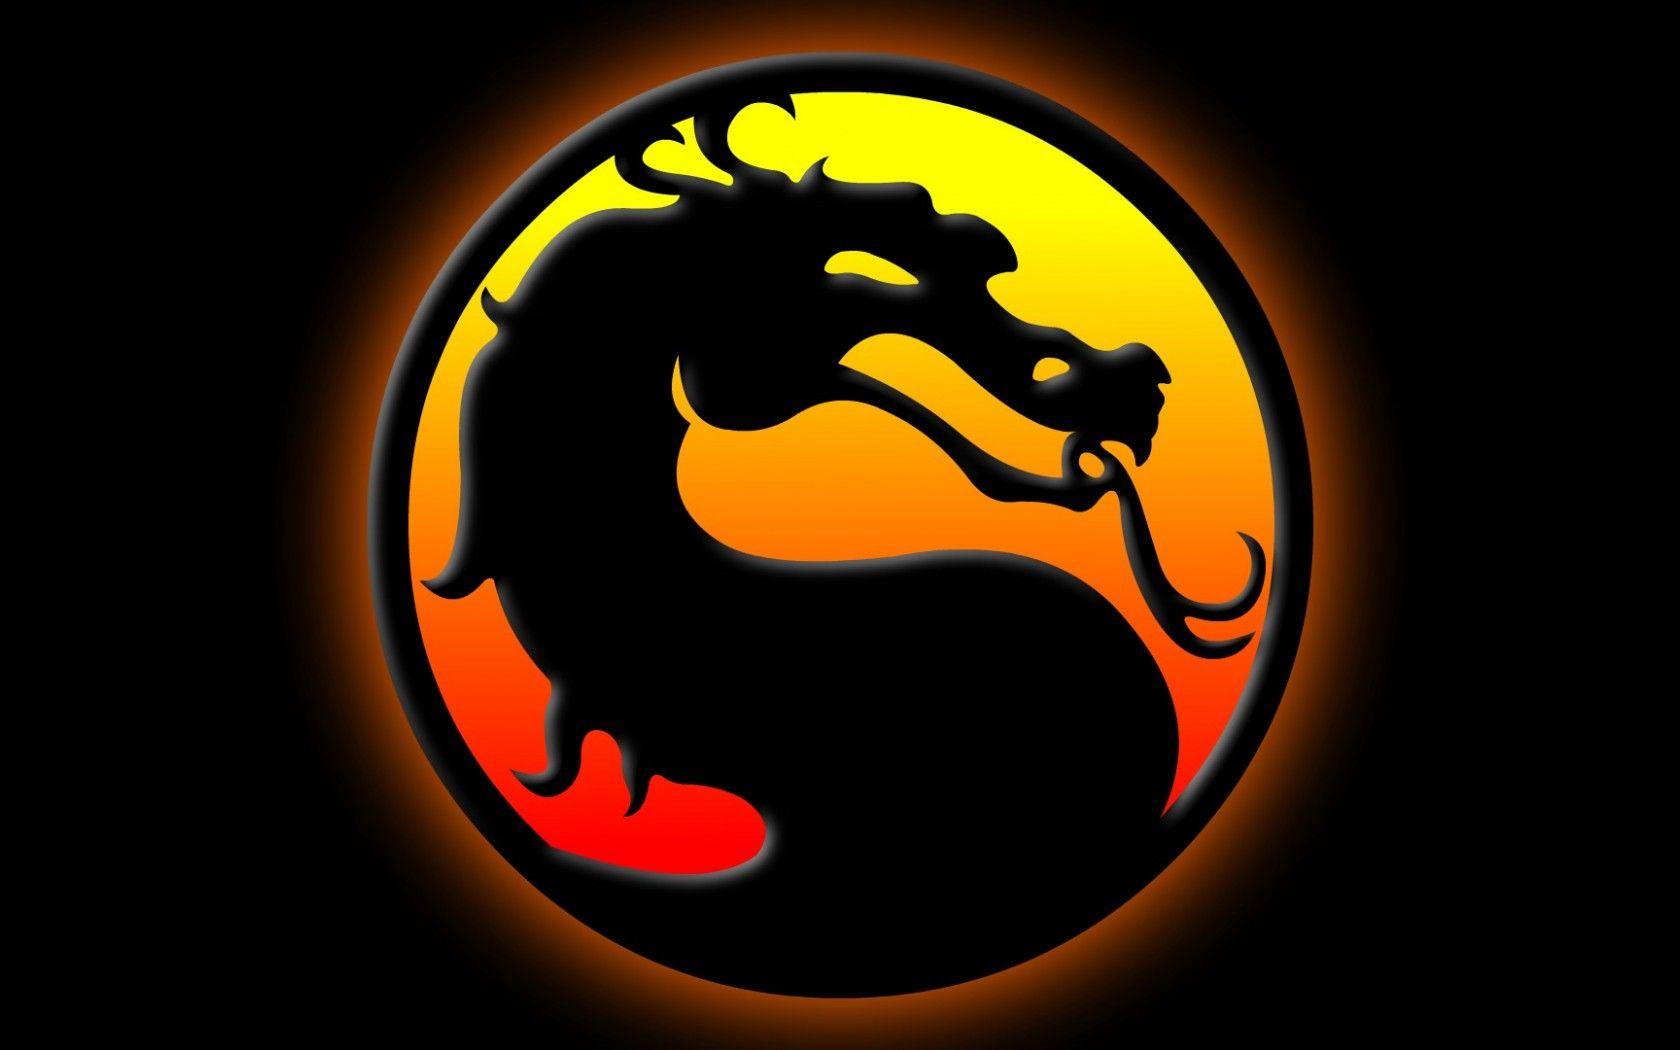 Dragon logo Mortal Kombat games, fan site!